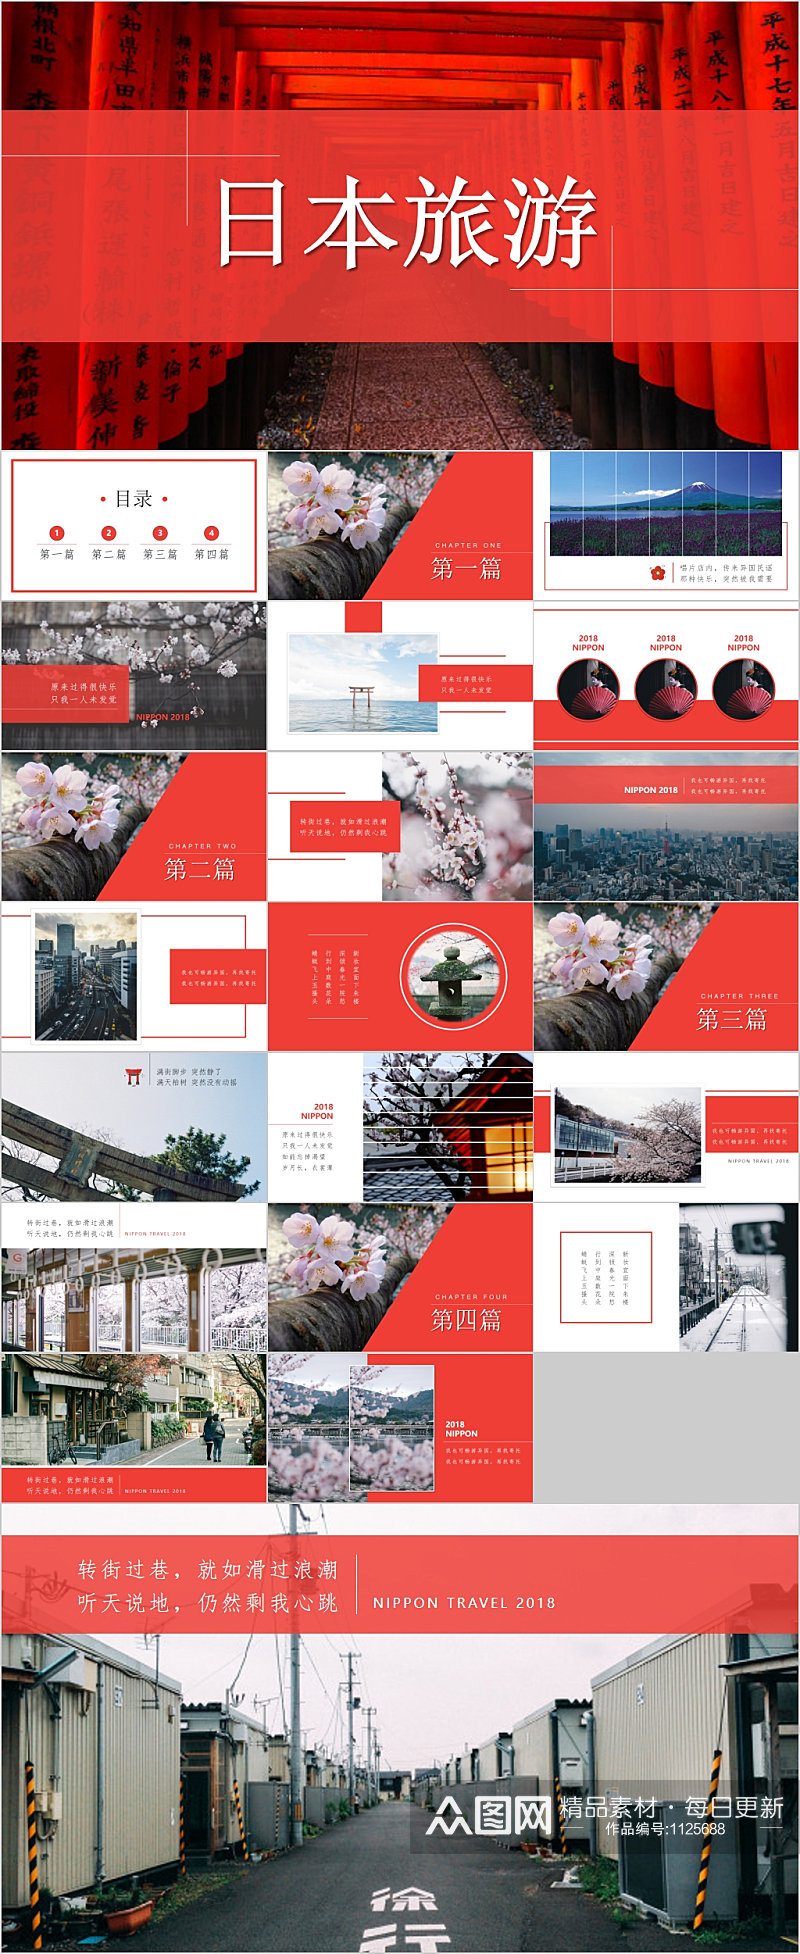 红色时尚日本旅游宣传PPT模板素材